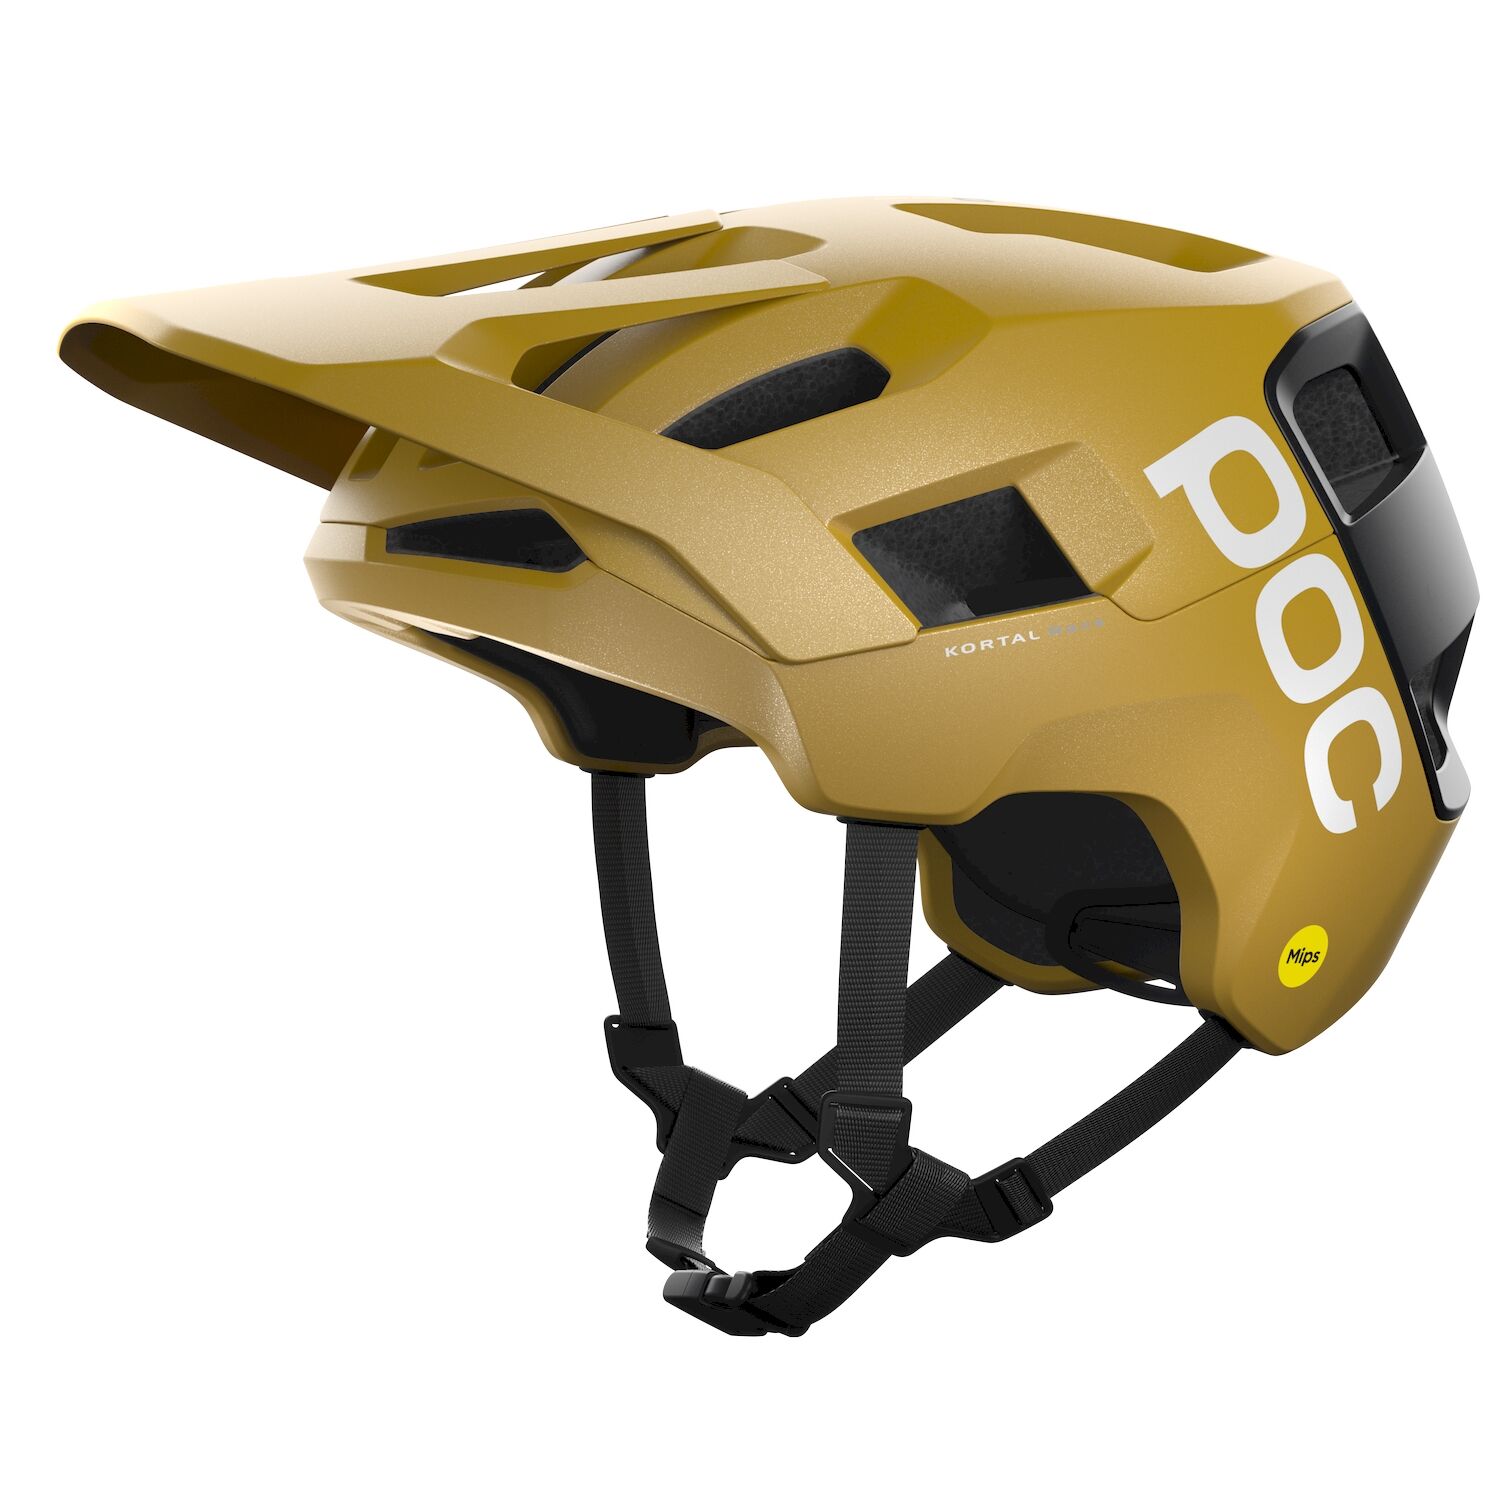 Poc Kortal Race MIPS - MTB-Helmet